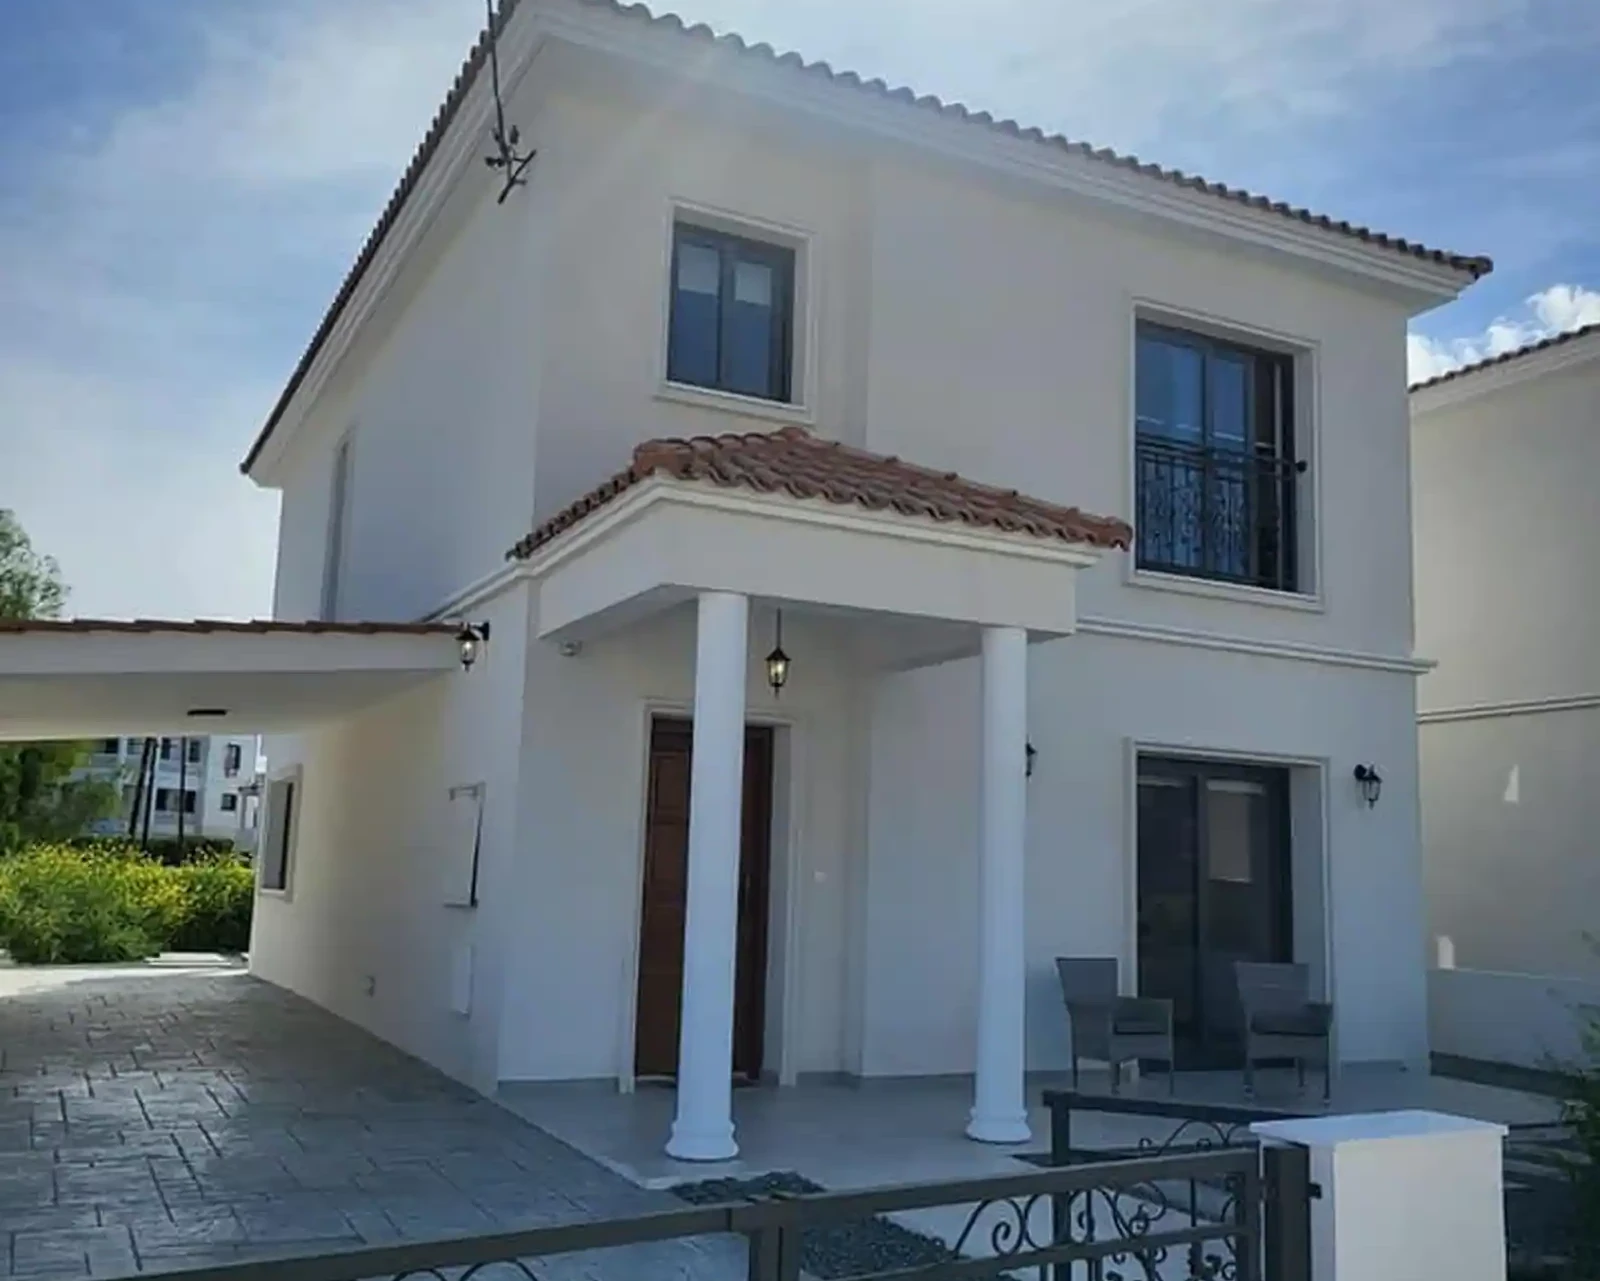 3-bedroom villa to rent €1.700, image 1